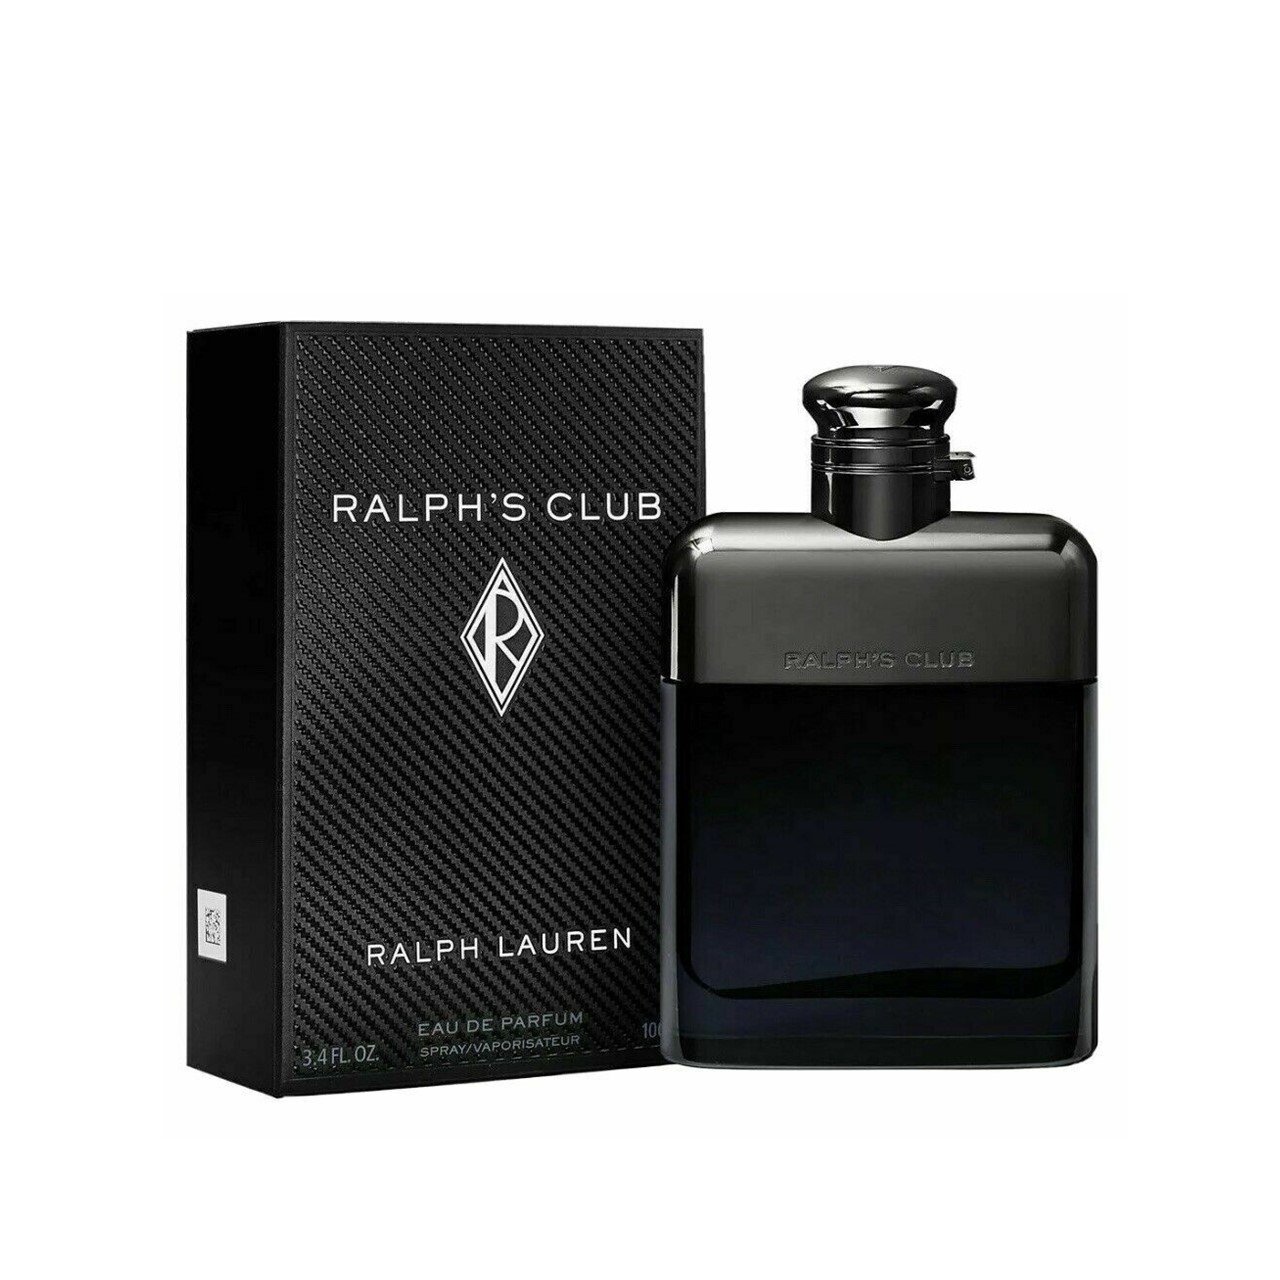 Buy Ralph Lauren Ralph's Club Eau de Parfum For Men 100ml · India